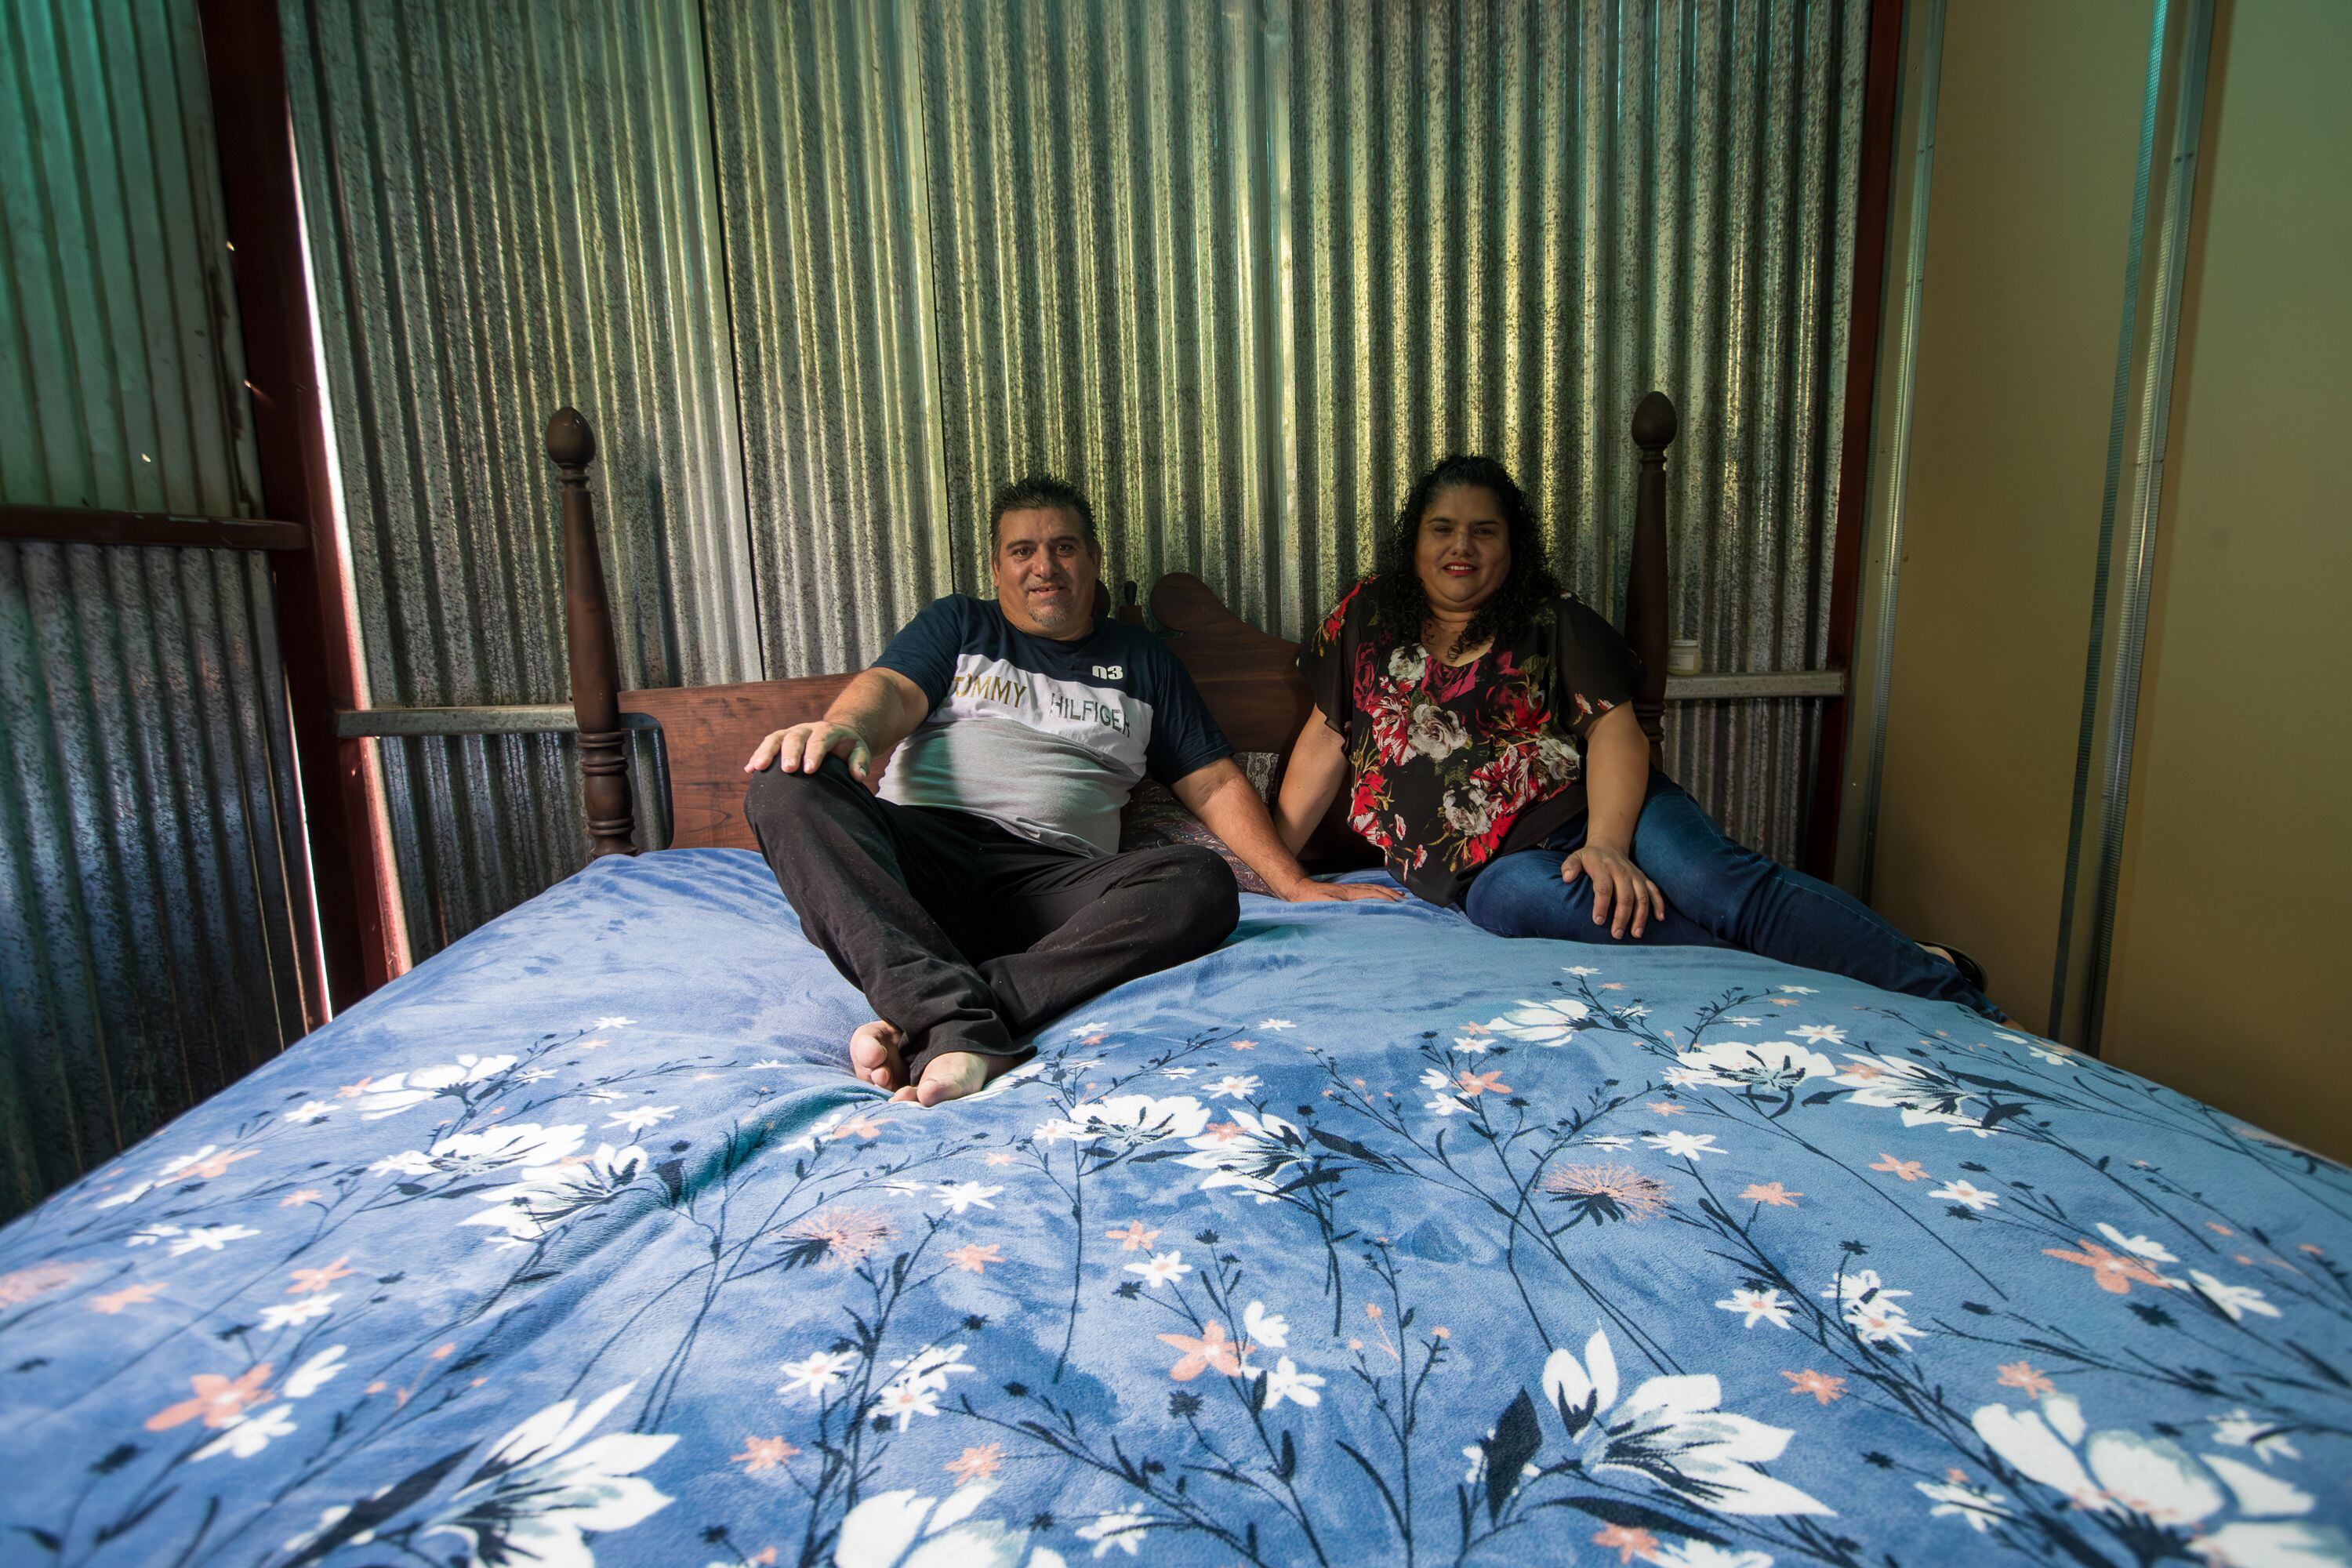 Marvin Delgado y su esposa Digna Matamoros tienen 30 años de casados y hasta hace cinco meses comenzaron a dormir separados.  Él tiene un problema grave de ronquidos que lo aleja físicamente de su esposa por las noches y por el cual se enfrenta a ciertos rechazos.